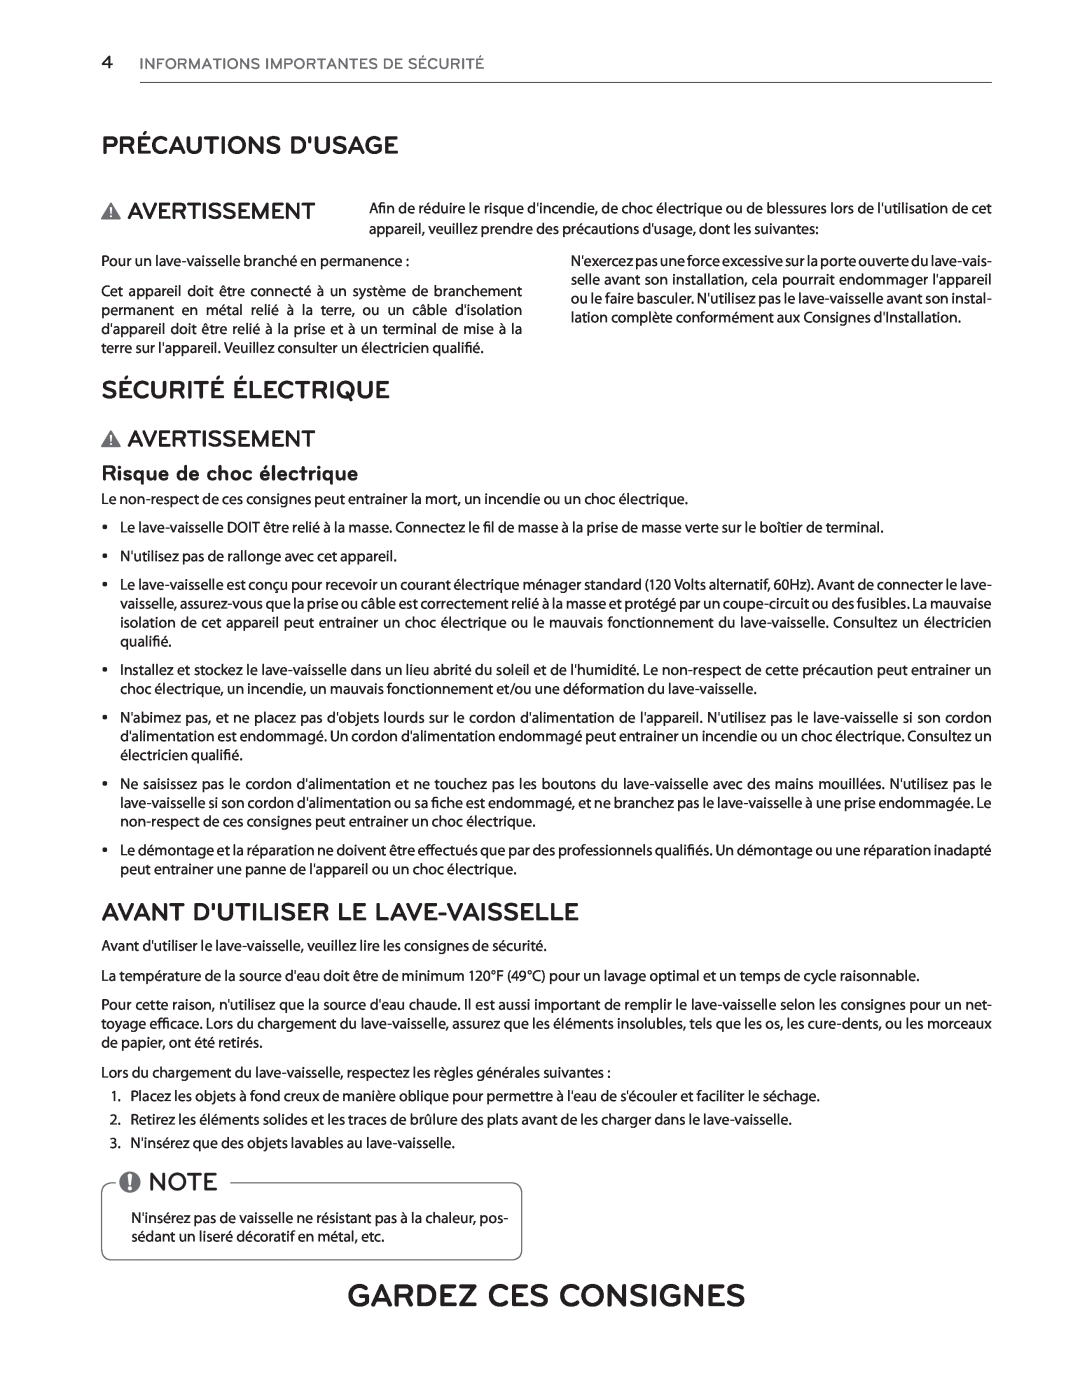 LG Electronics LDS5040ST Gardez Ces Consignes, Sécurité Électrique, Avant Dutiliser Le Lave-Vaisselle, Avertissement 